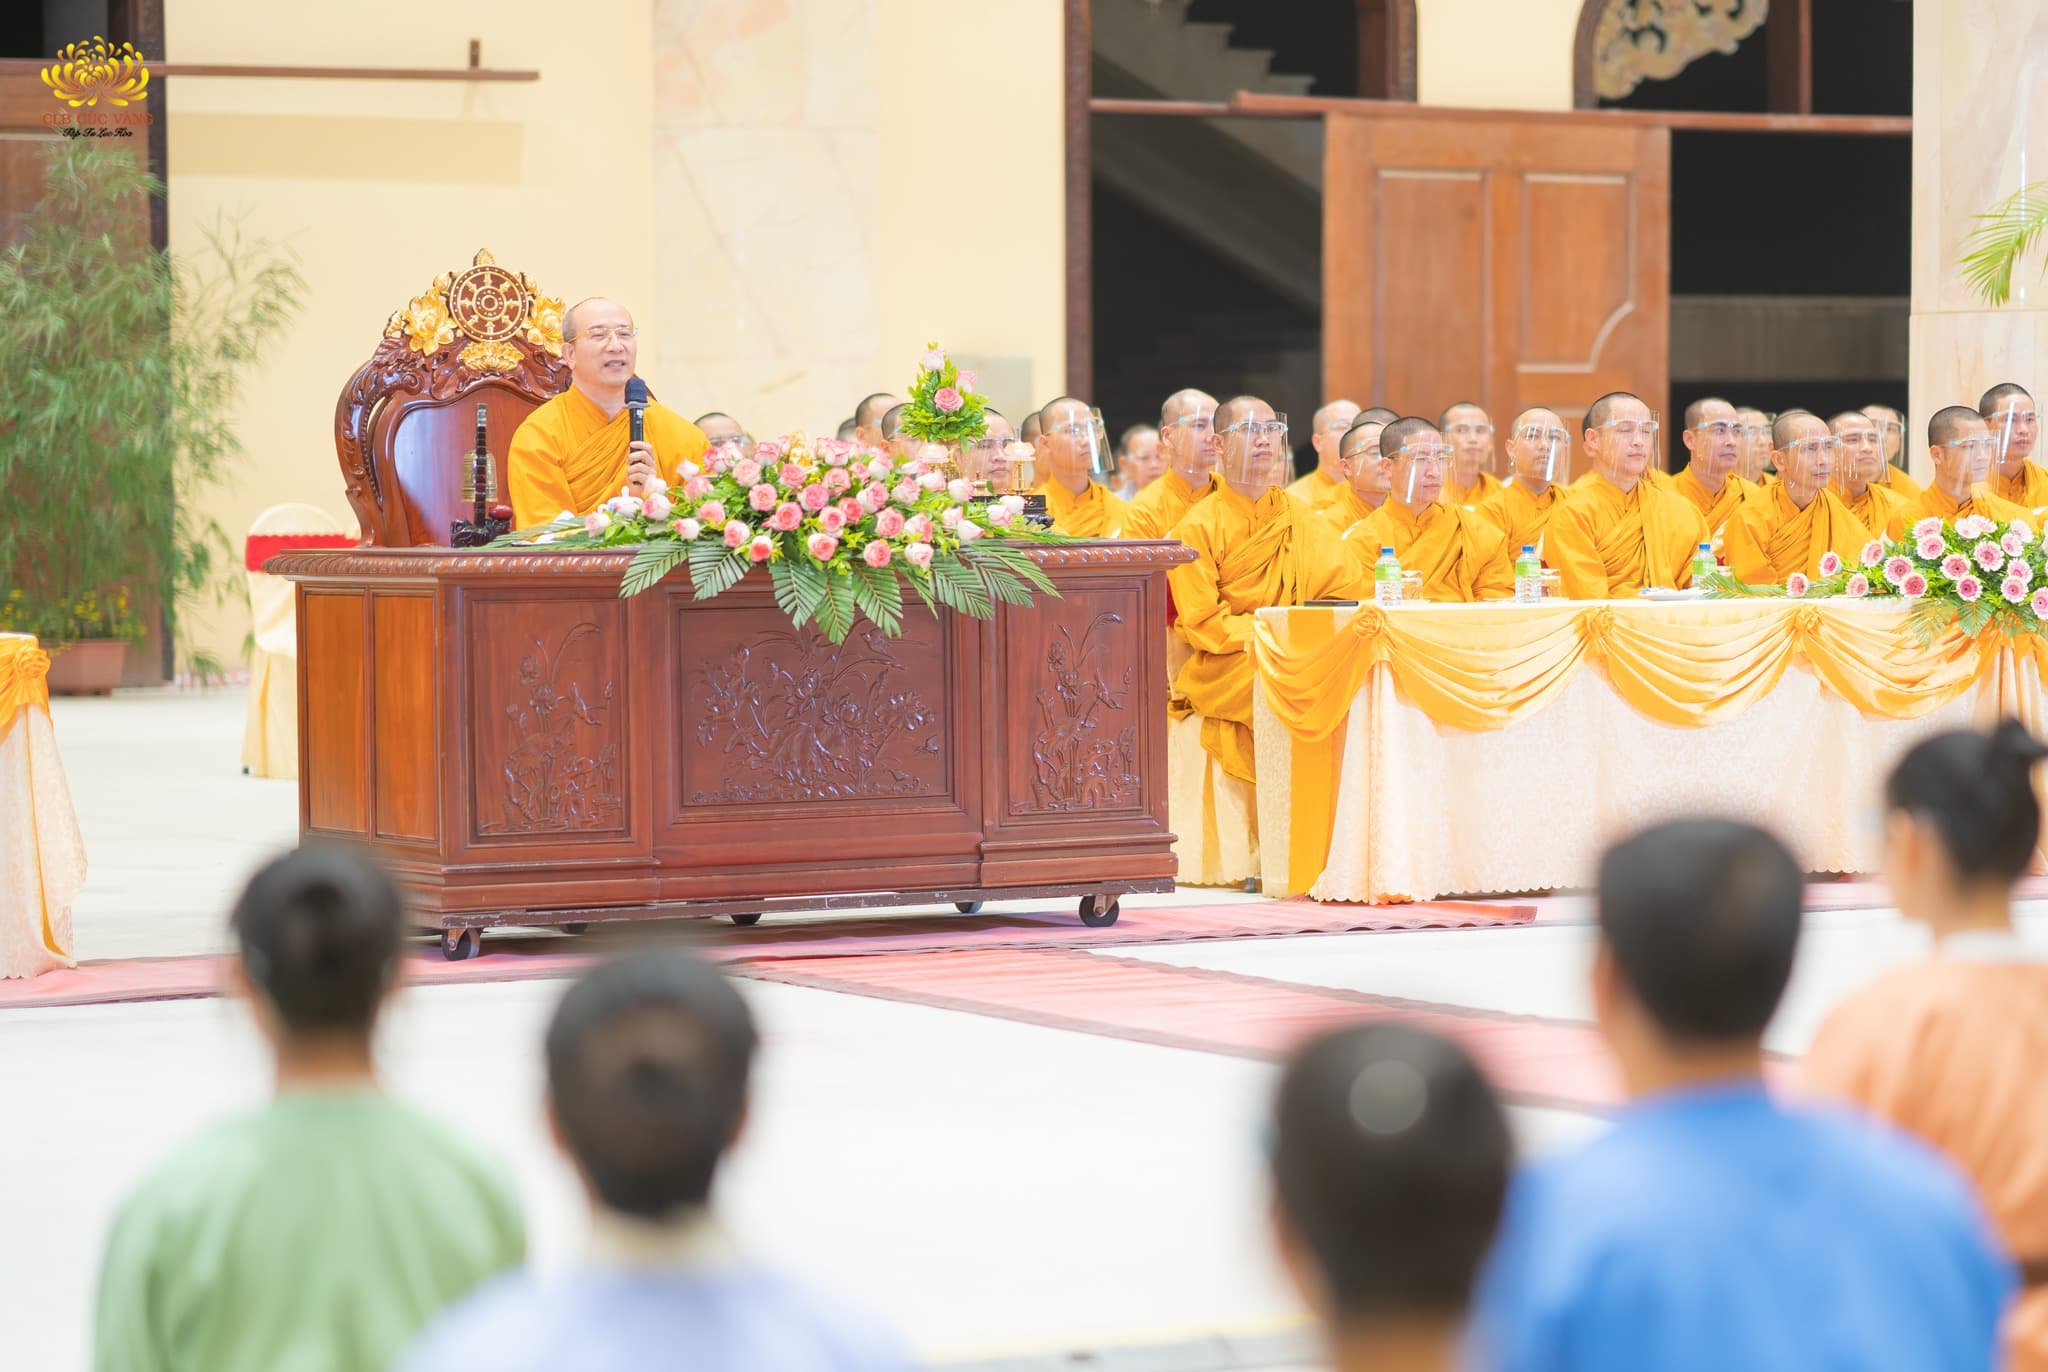 Sư Phụ Thích Trúc Thái Minh đã chia sẻ về 1 phần cuộc đời của Phật Hoàng Trần Nhân Tông trong việc cai trị đất nước bằng pháp lục hòaCaption